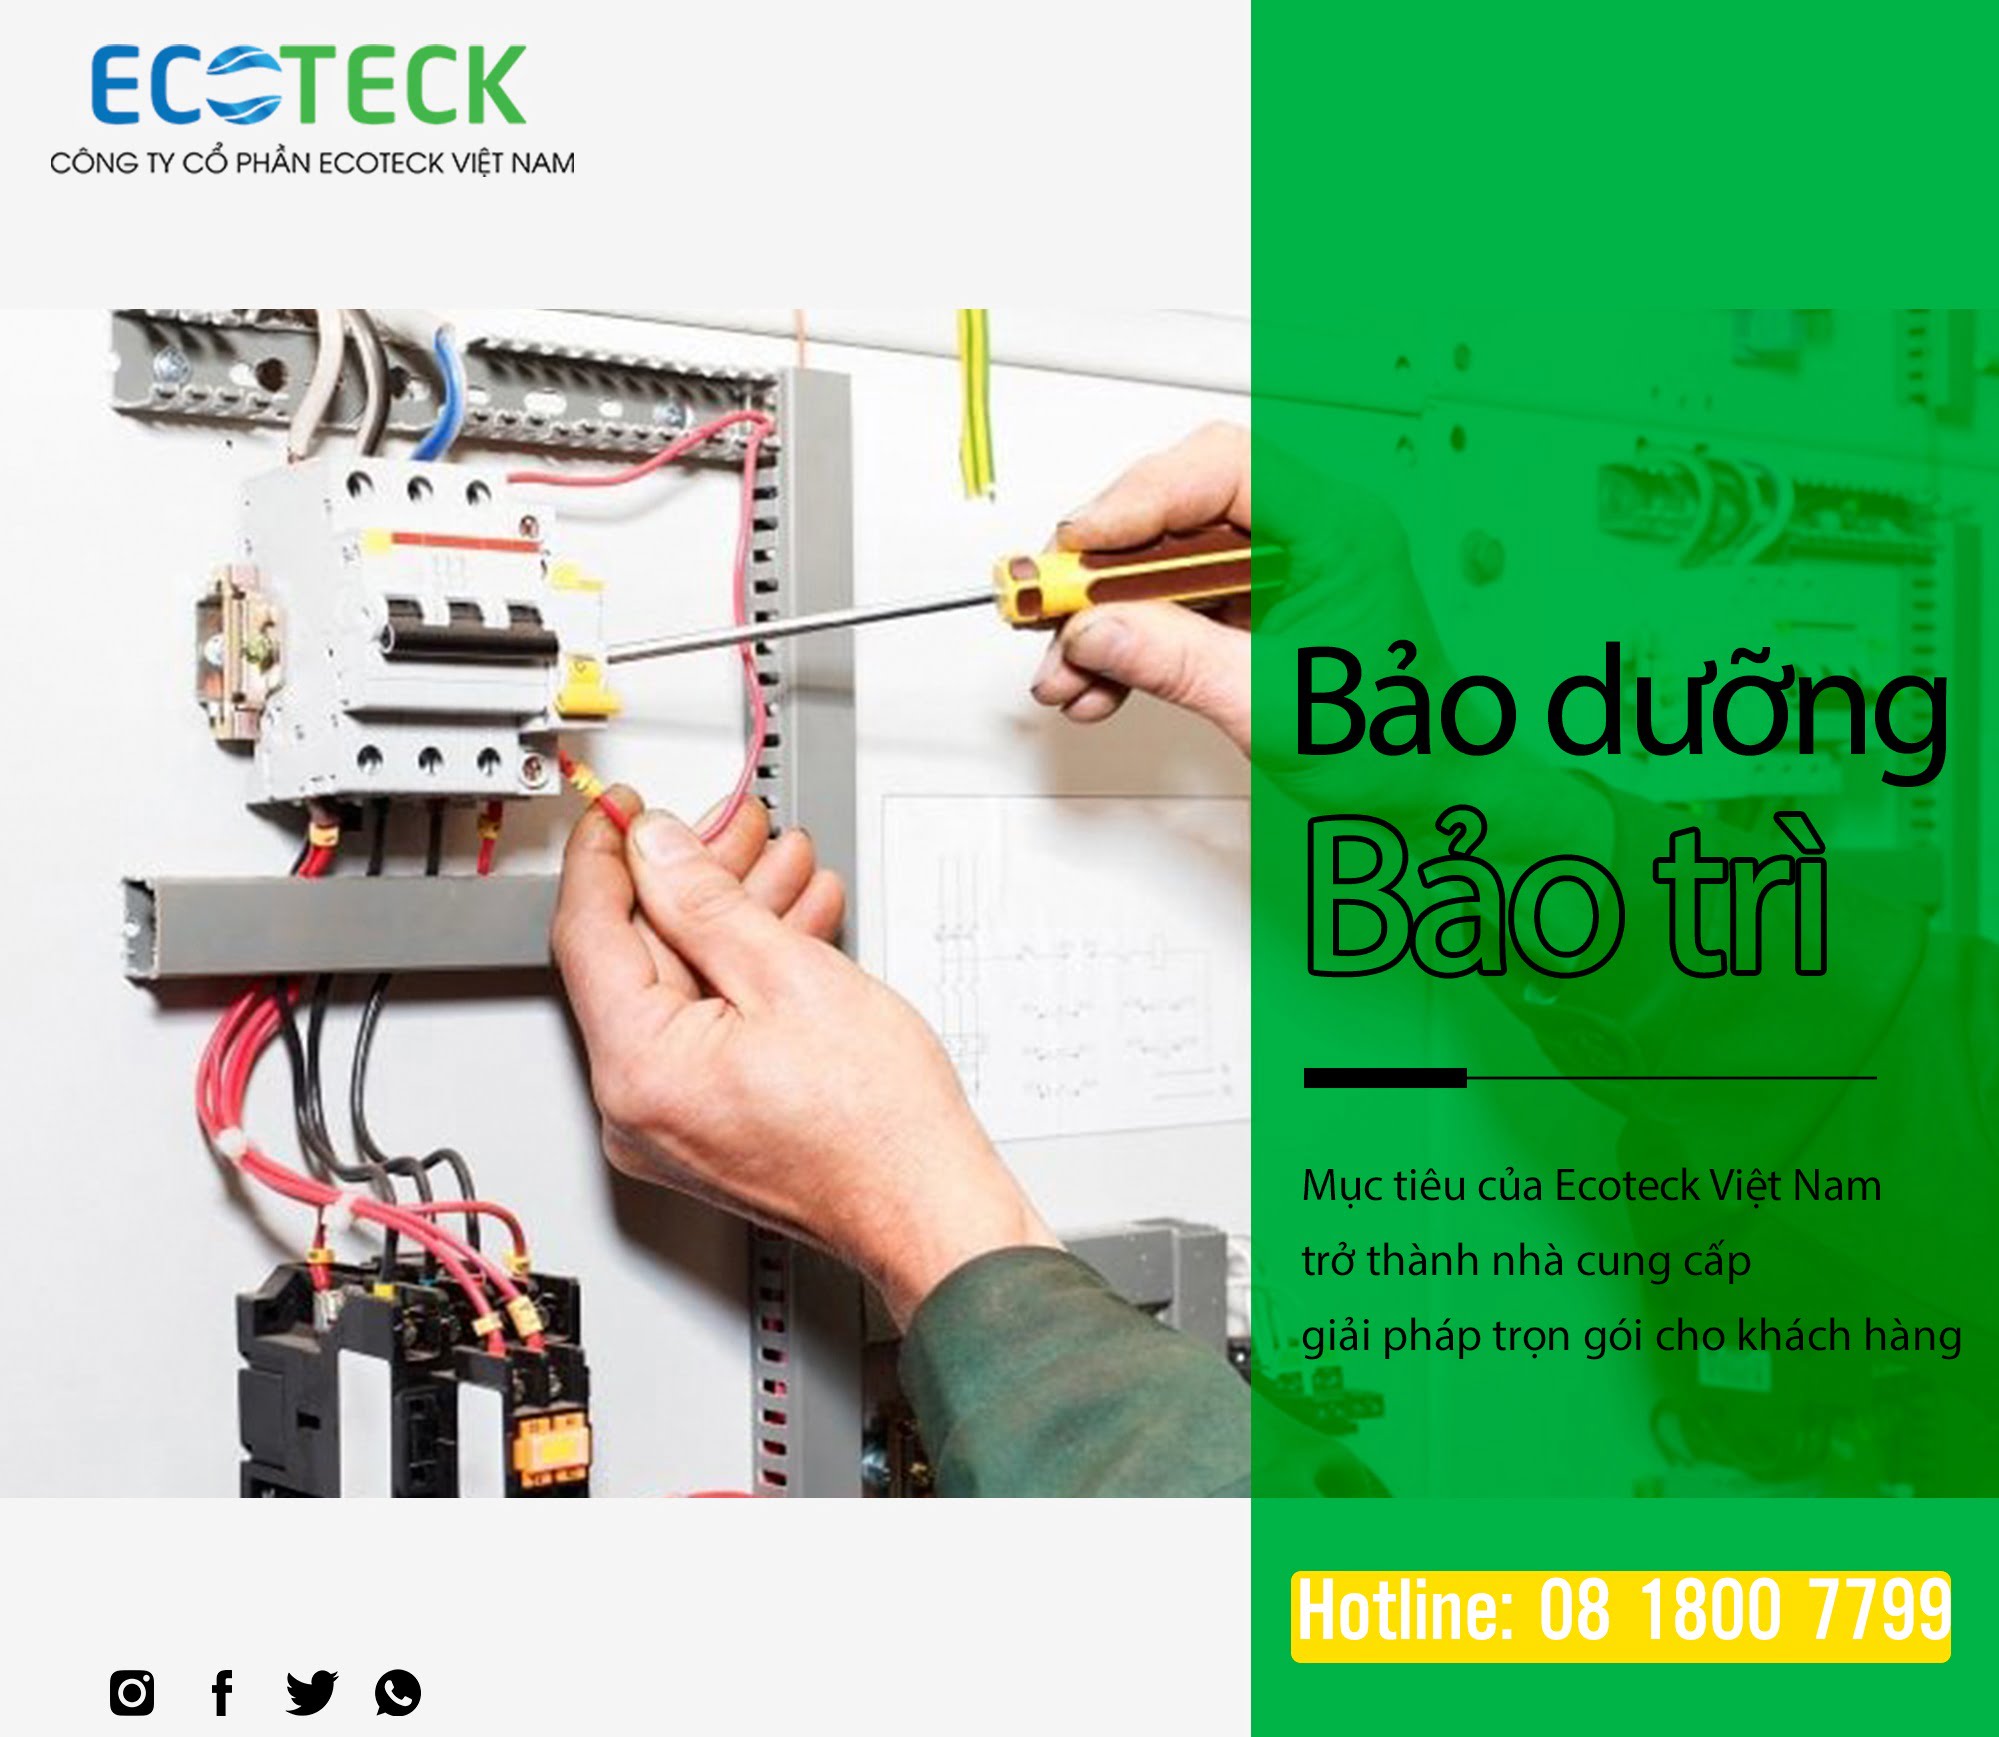 Ecoteck cung cấp dịch vụ bảo dưỡng và bảo trì trọn gói